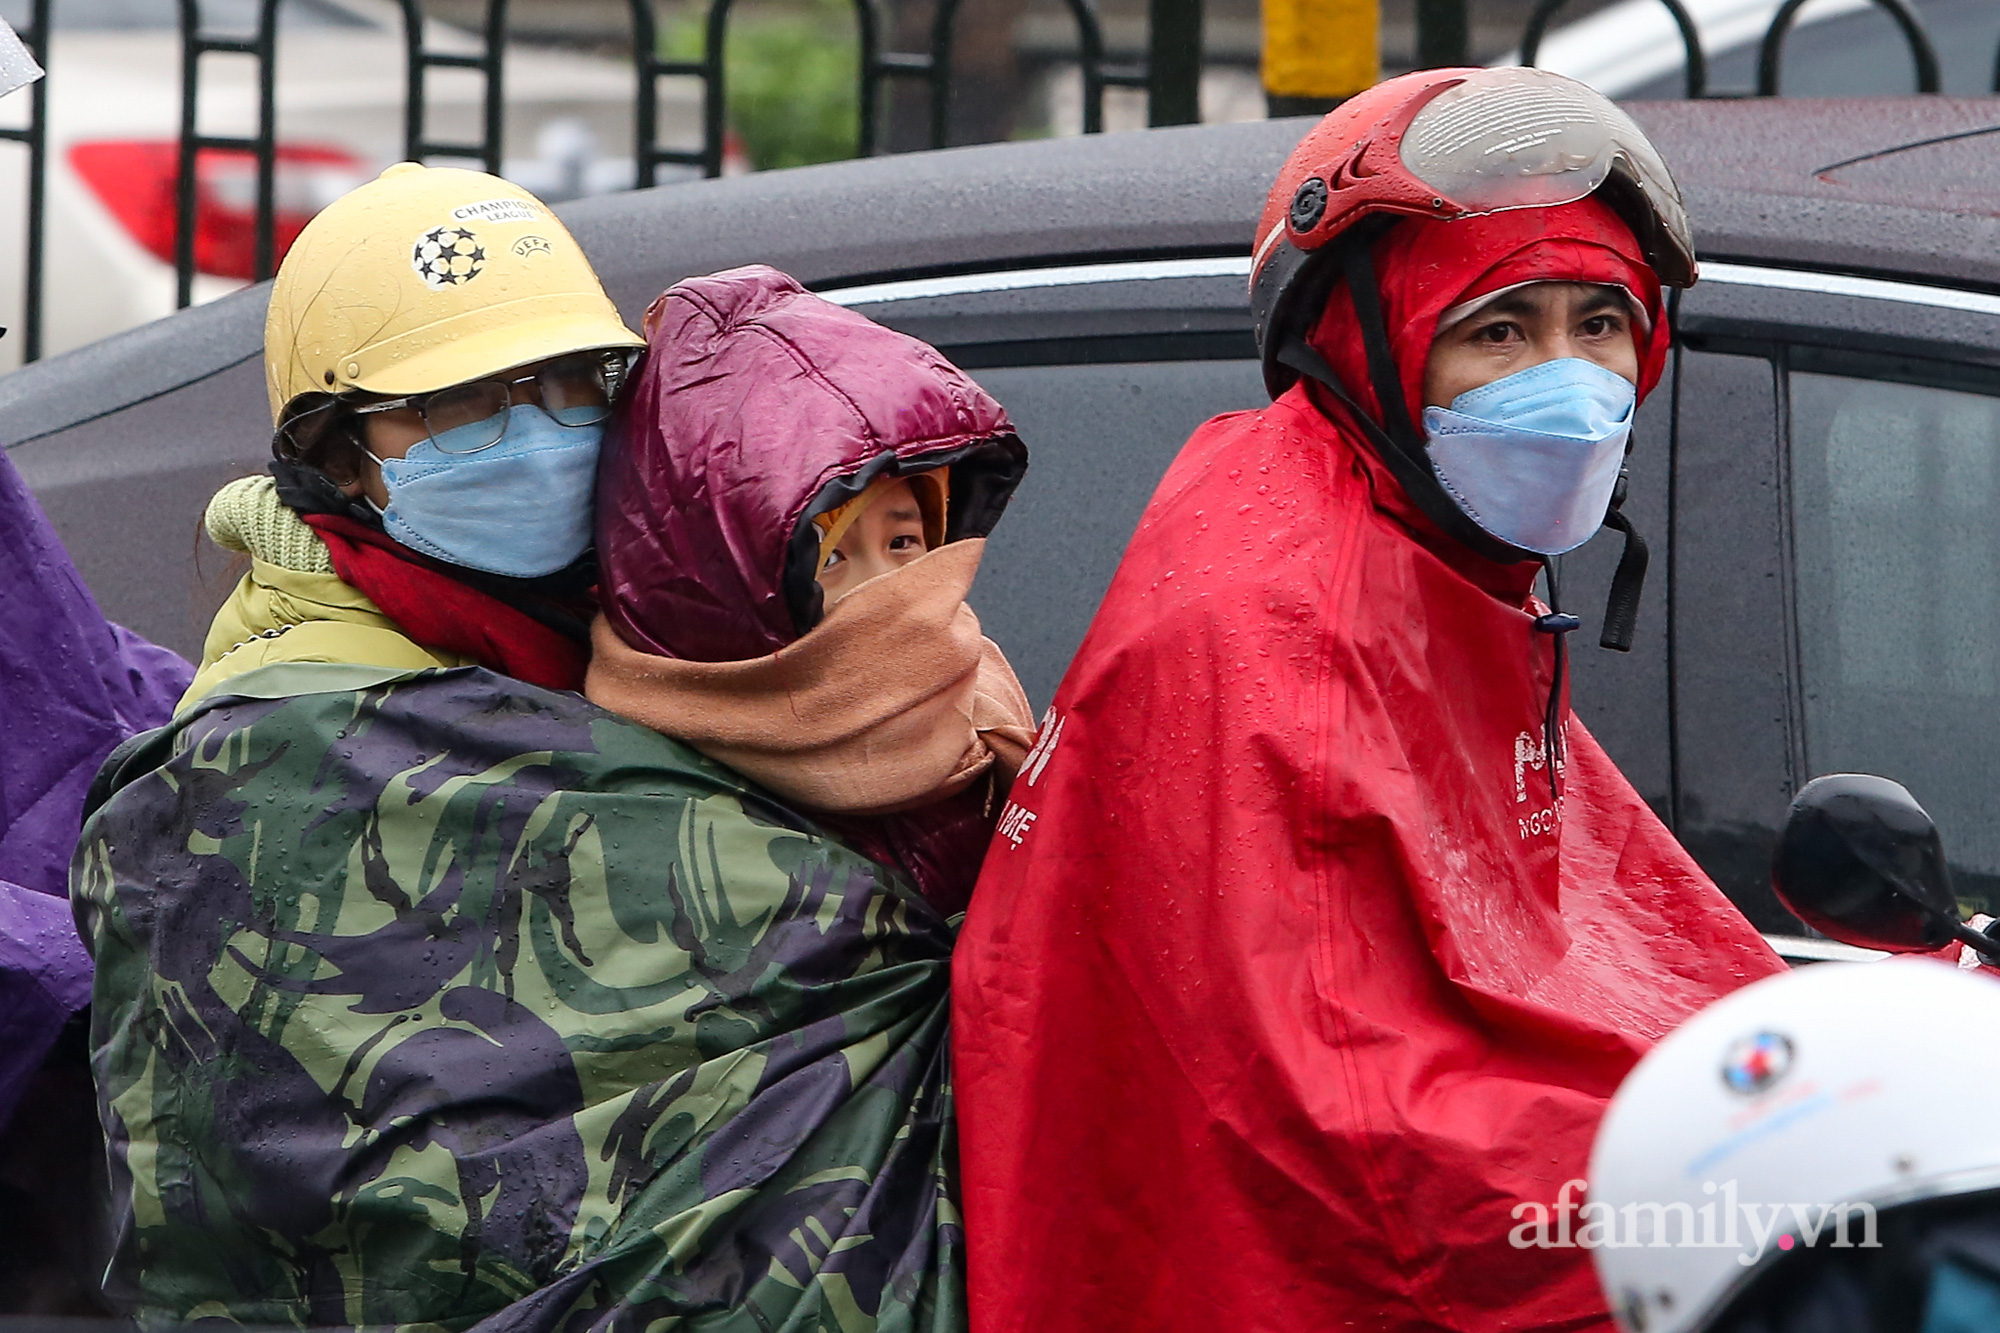 Người dân đội mưa rét trở lại Hà Nội sau kỳ nghỉ Tết, khu vực cửa ngõ ùn tắc-5